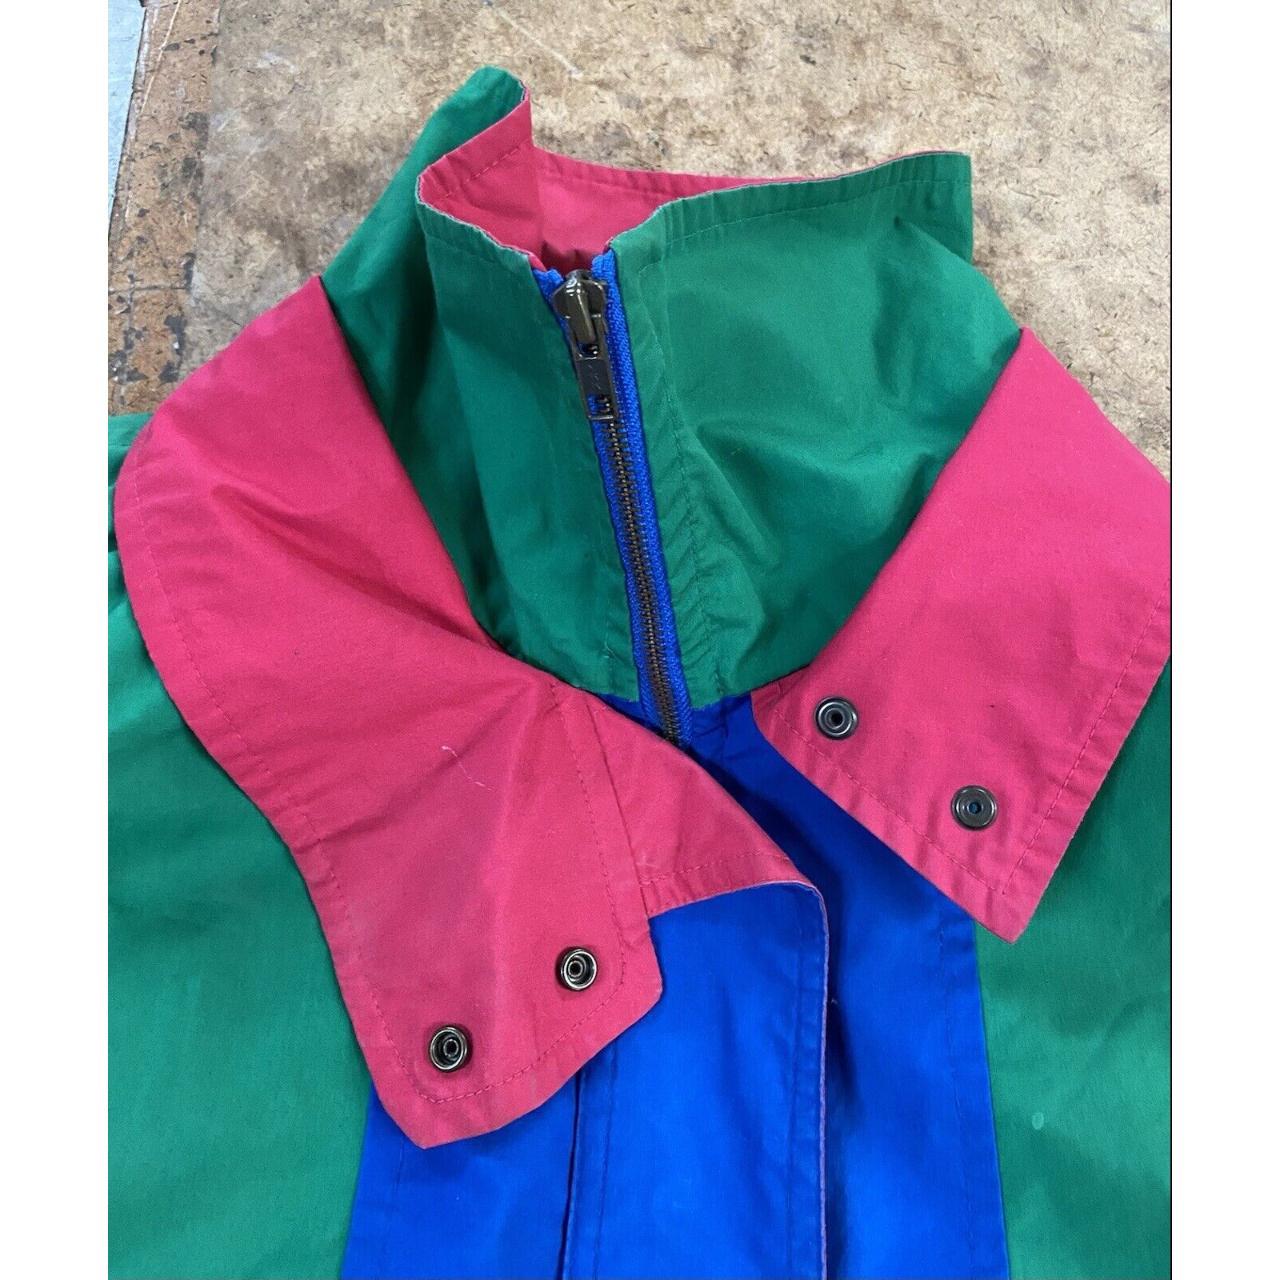 London Fog Vintage Jacket Colorblock Small/Med... - Depop